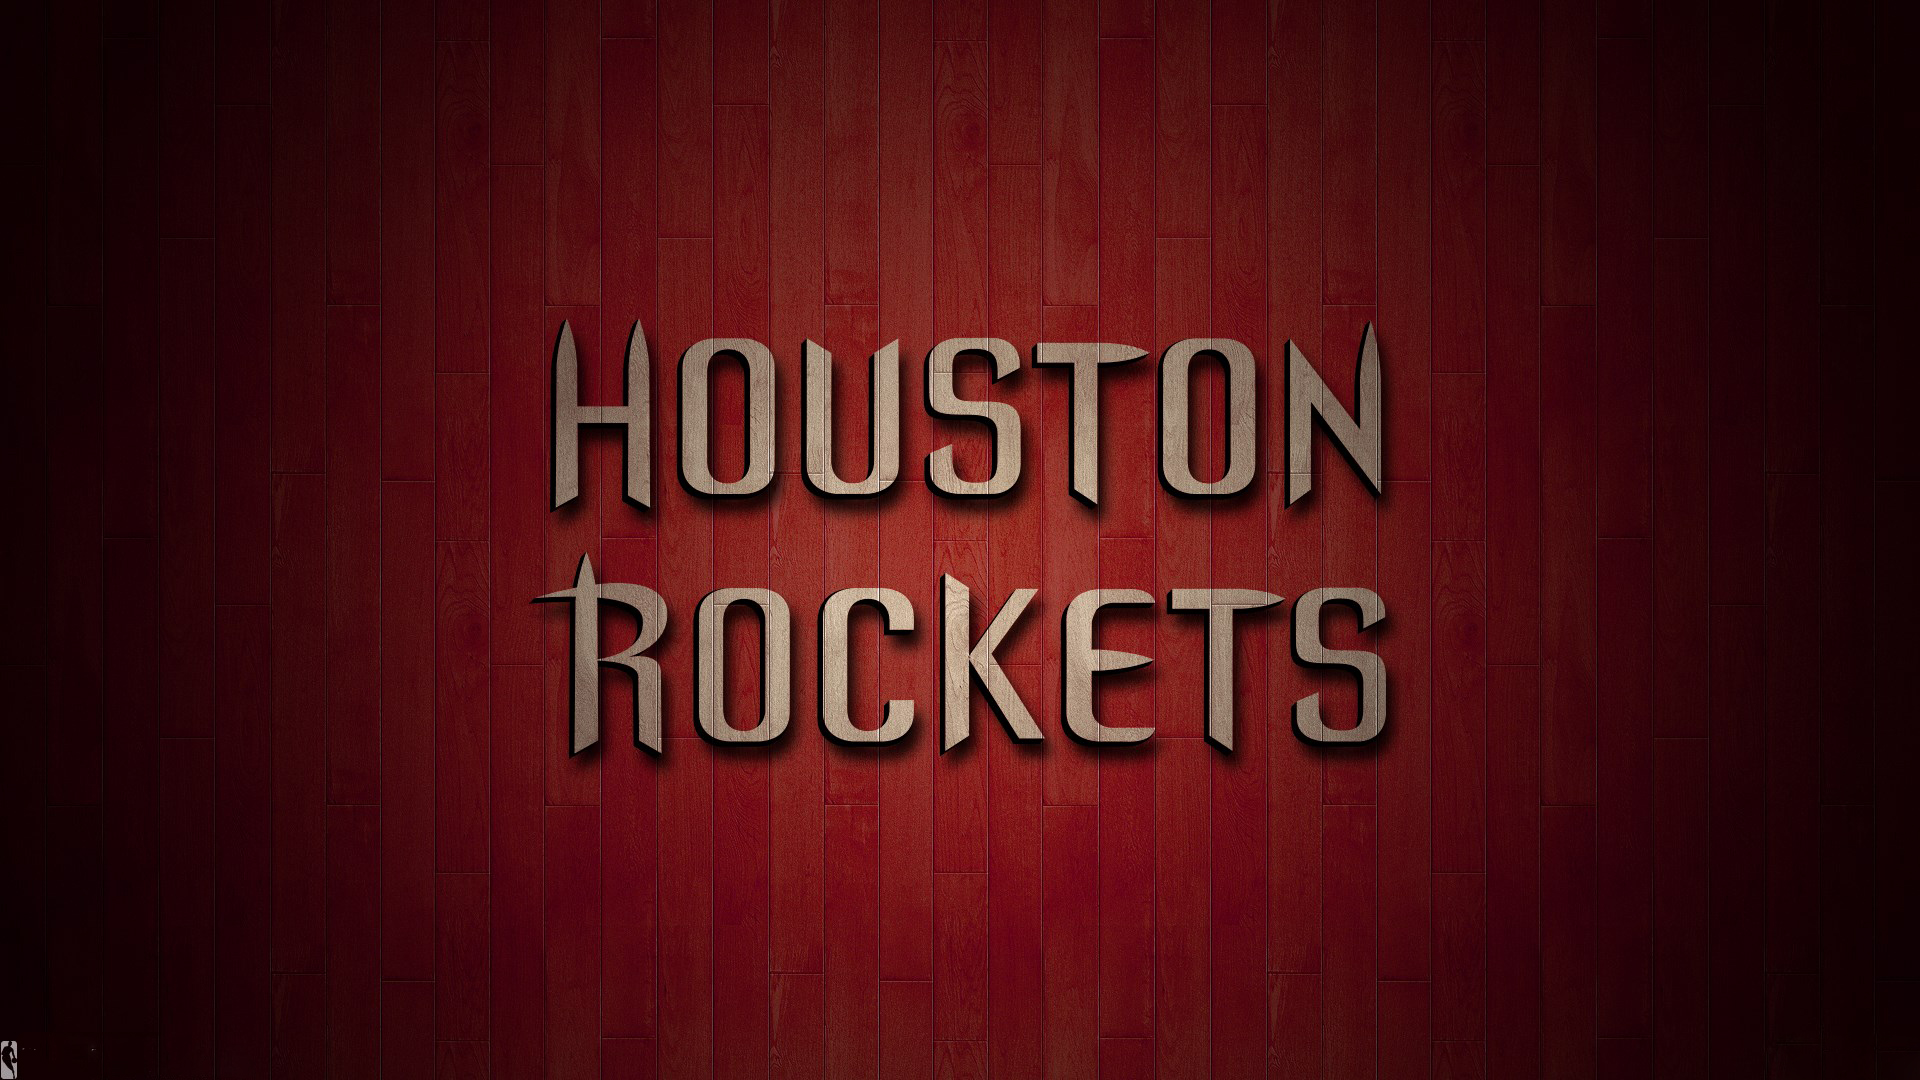 Houston Rockets Wallpapers Hd Nba Hd Wallpapers 1920 - Wood - HD Wallpaper 